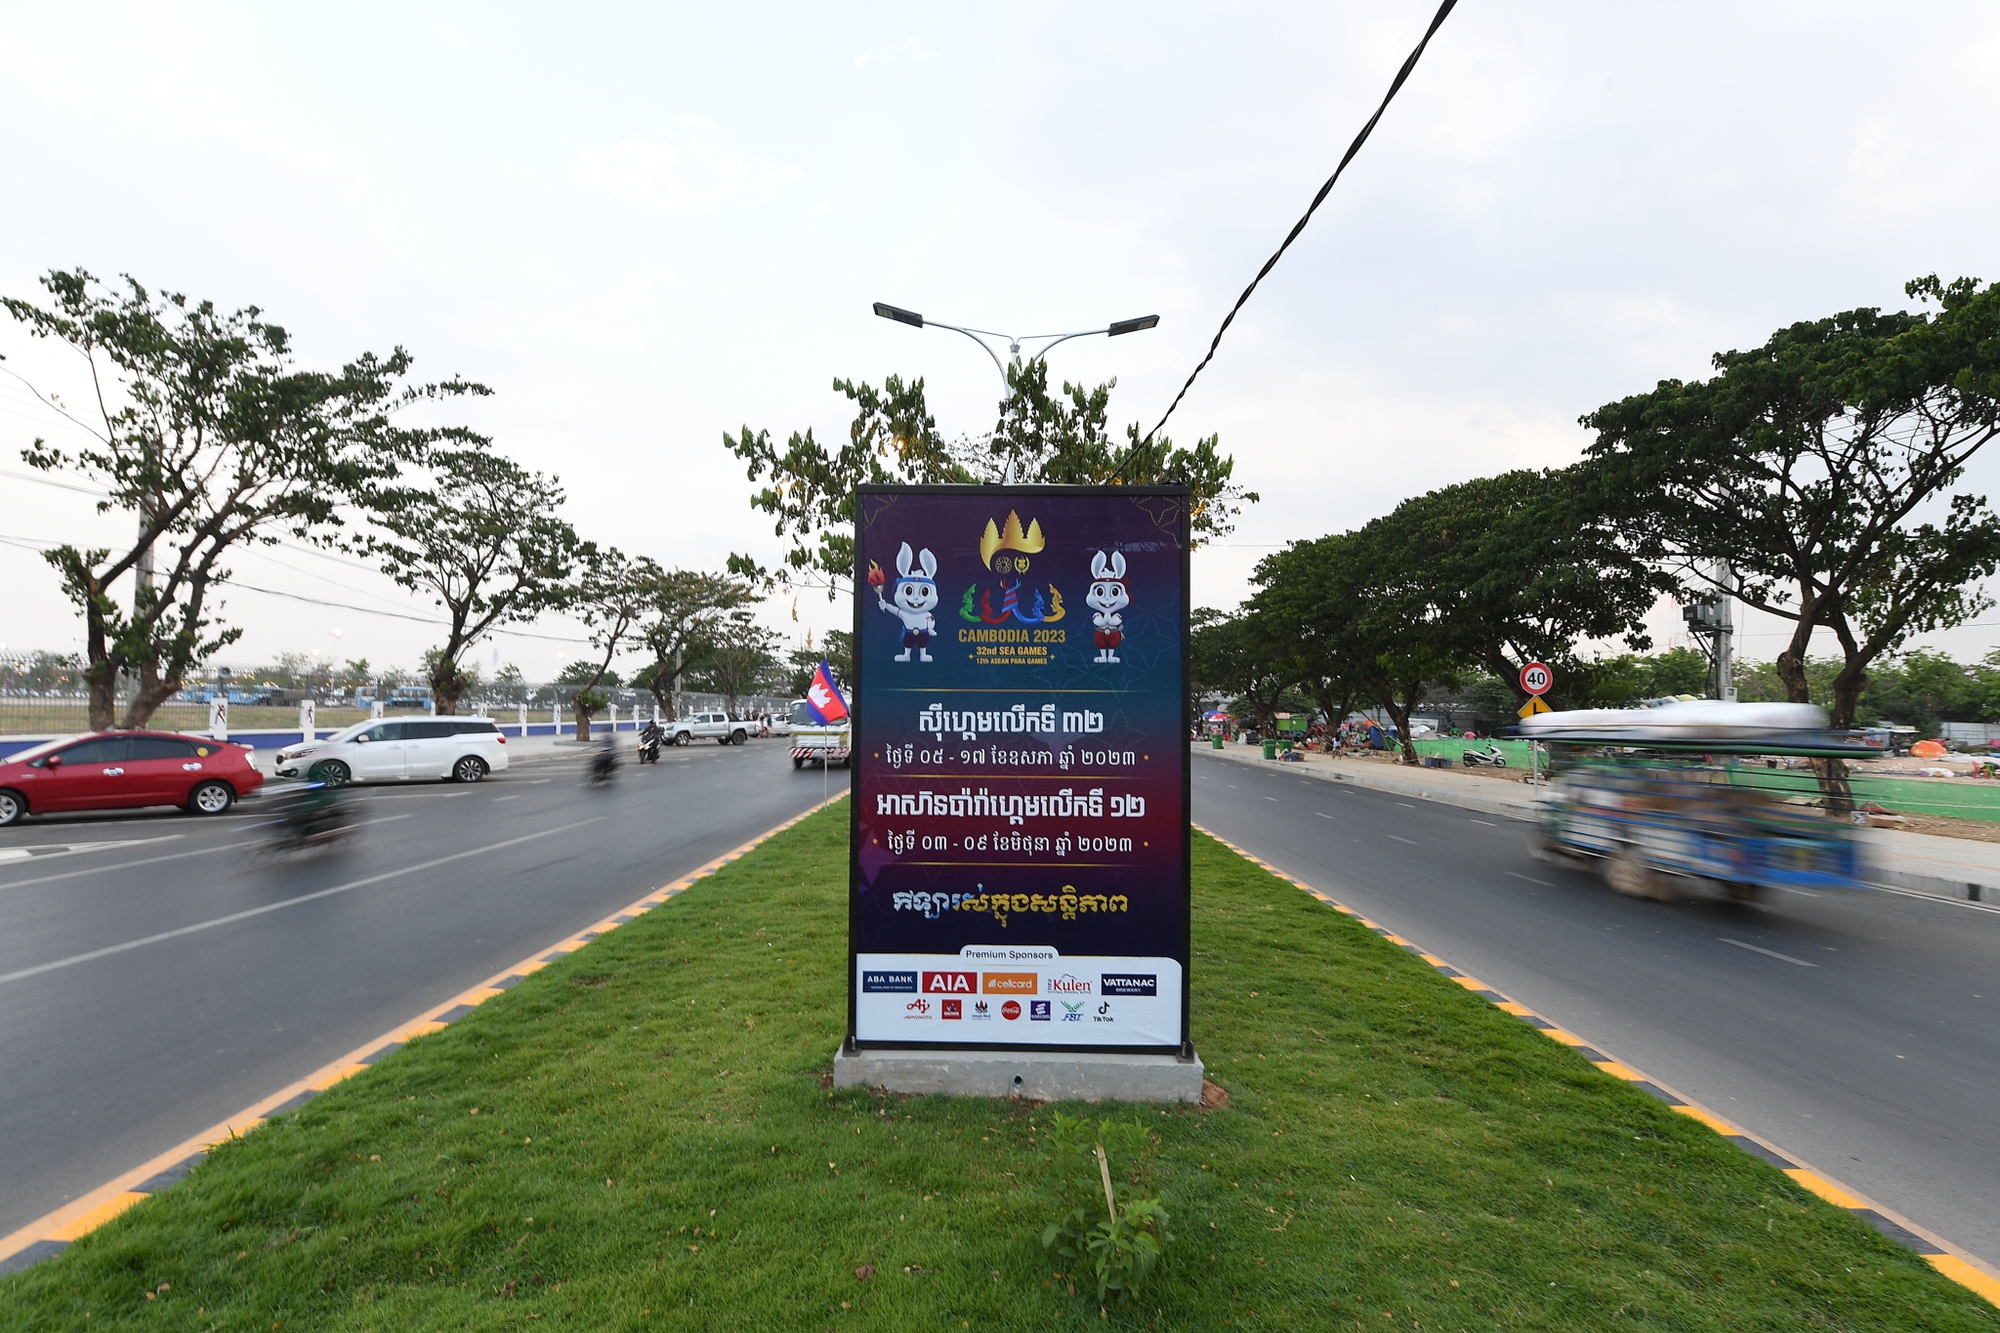 Đường phố Phnom Penh rực rỡ sắc màu sẵn sàng cho lễ khai mạc SEA Games 2023 - Ảnh 8.